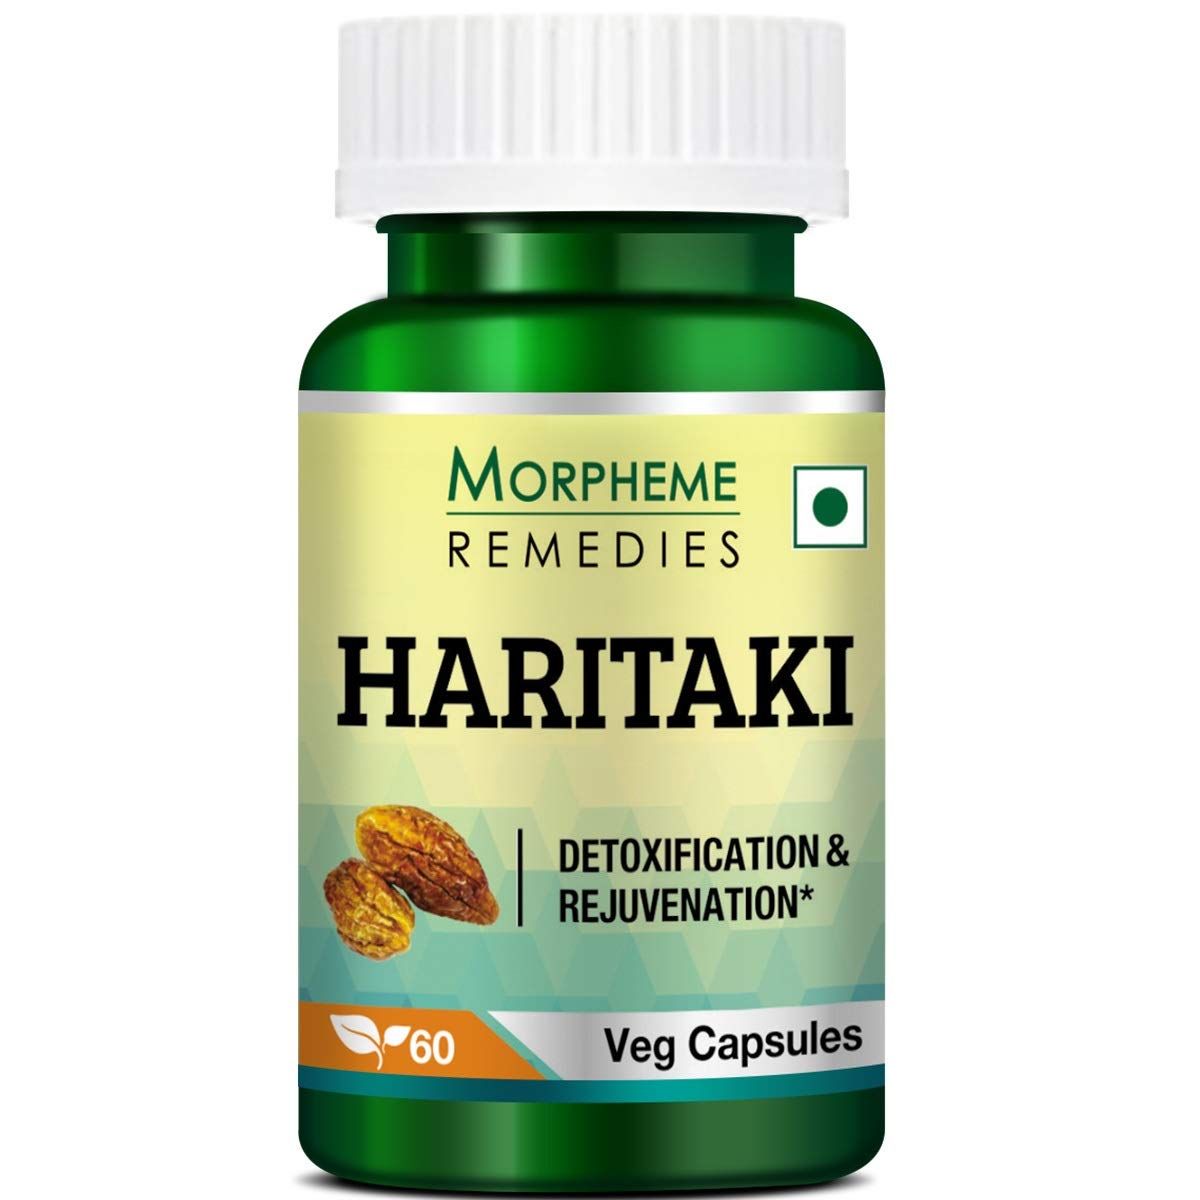 Morpheme Remedies Haritaki Image